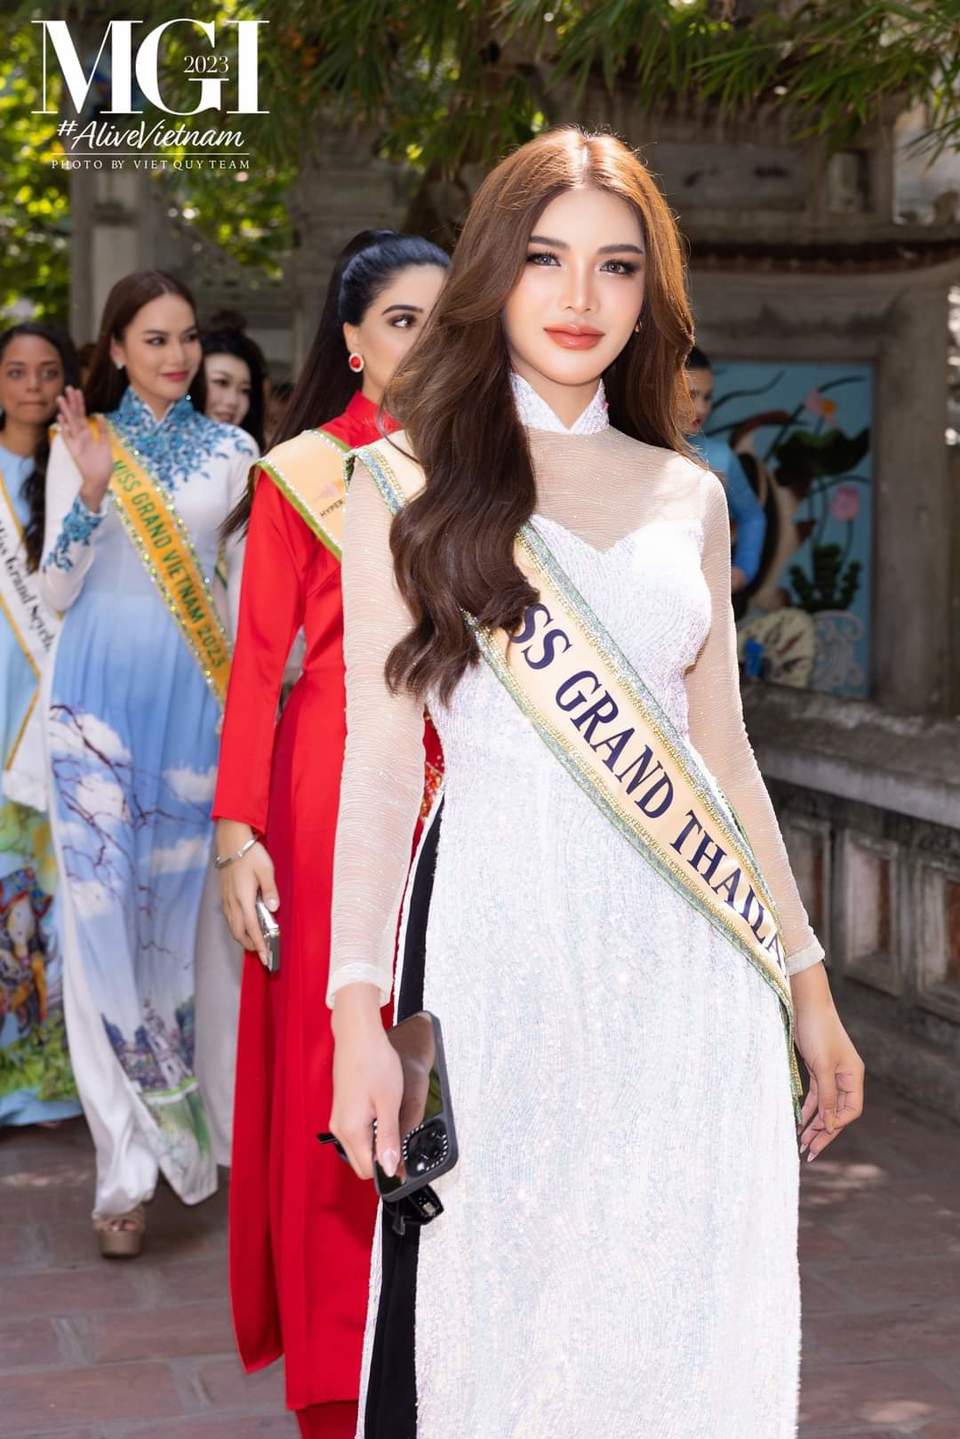 Miss Grand International 2023 duyên dáng bên triển lãm ảnh "Hà Nội trong tôi" - Ảnh 8